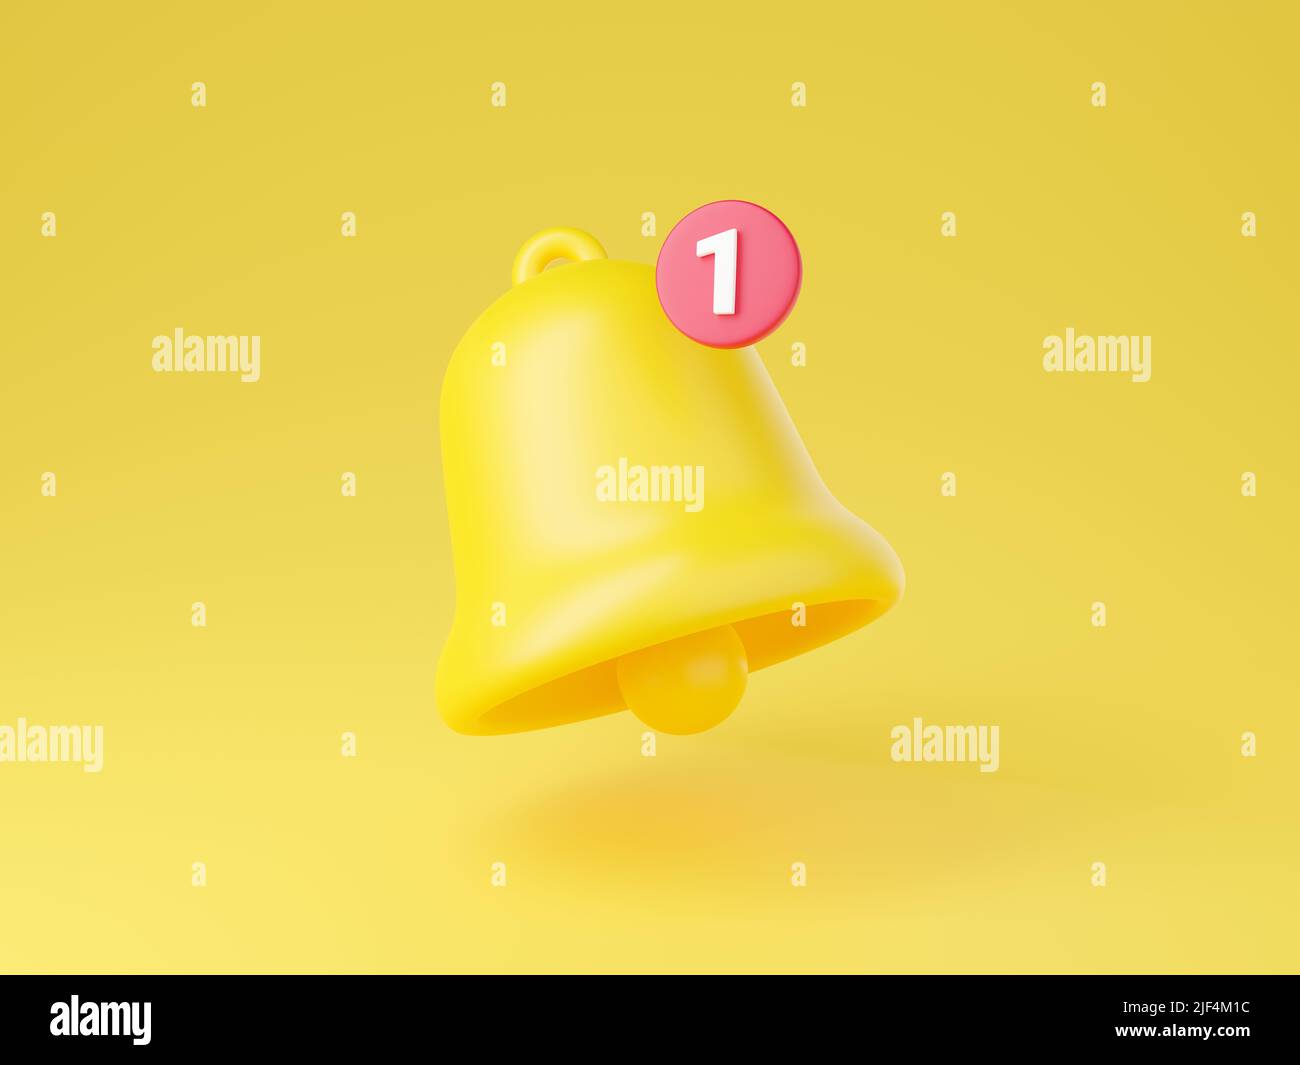 Benachrichtigungssymbol 3D Render - niedliche Cartoon-Illustration der einfachen gelben Glocke mit der ersten. Stockfoto